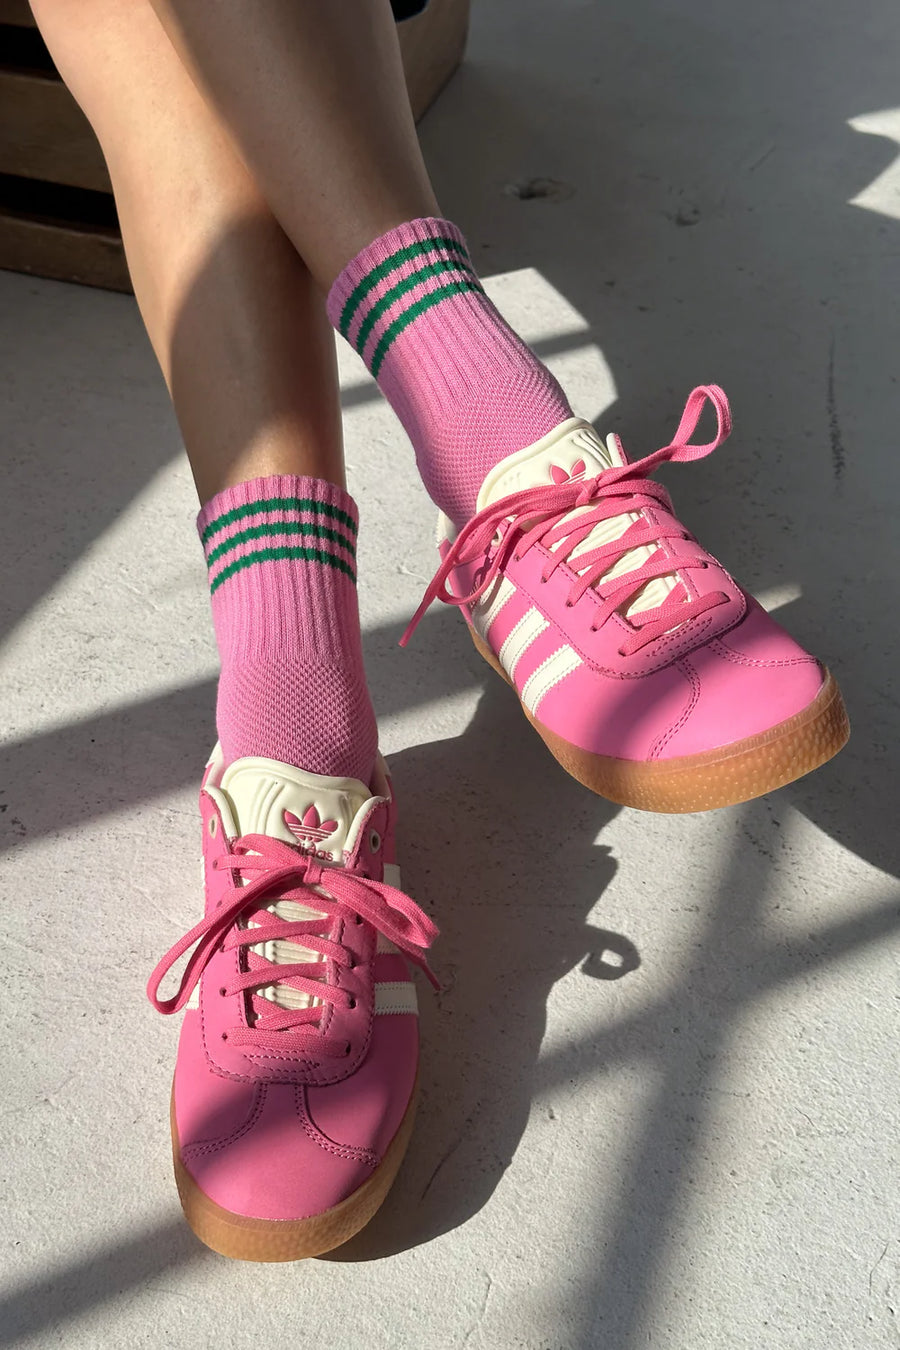 Girlfriend Socks - Rose Pink